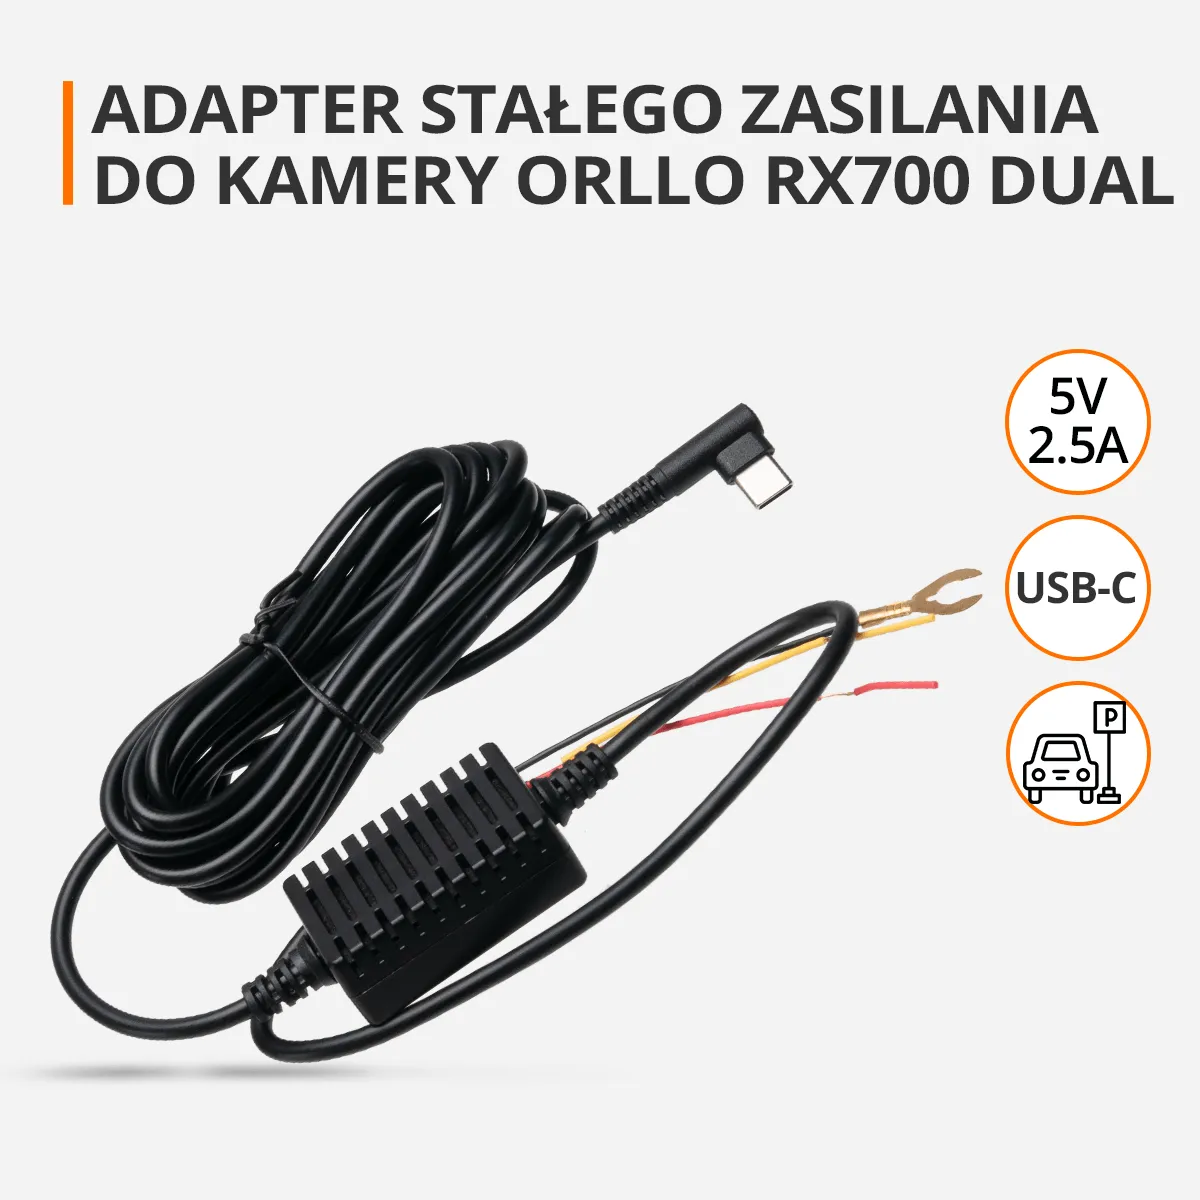 adapter stalego zasilania do kamer samochodowych RX700 Dualorllo.pl